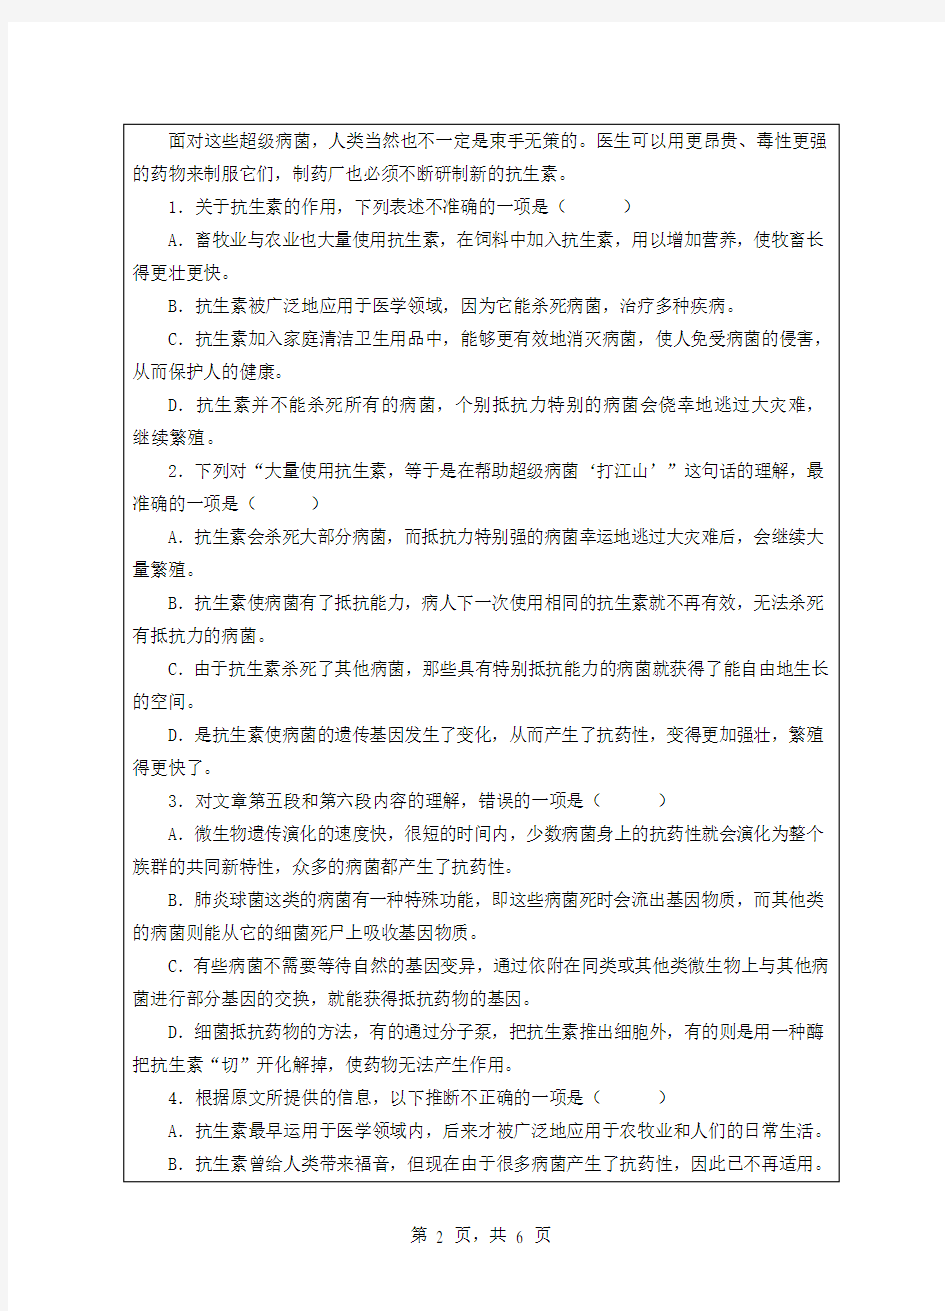 2011浙江师范大学 903 阅读与写作 初试试题